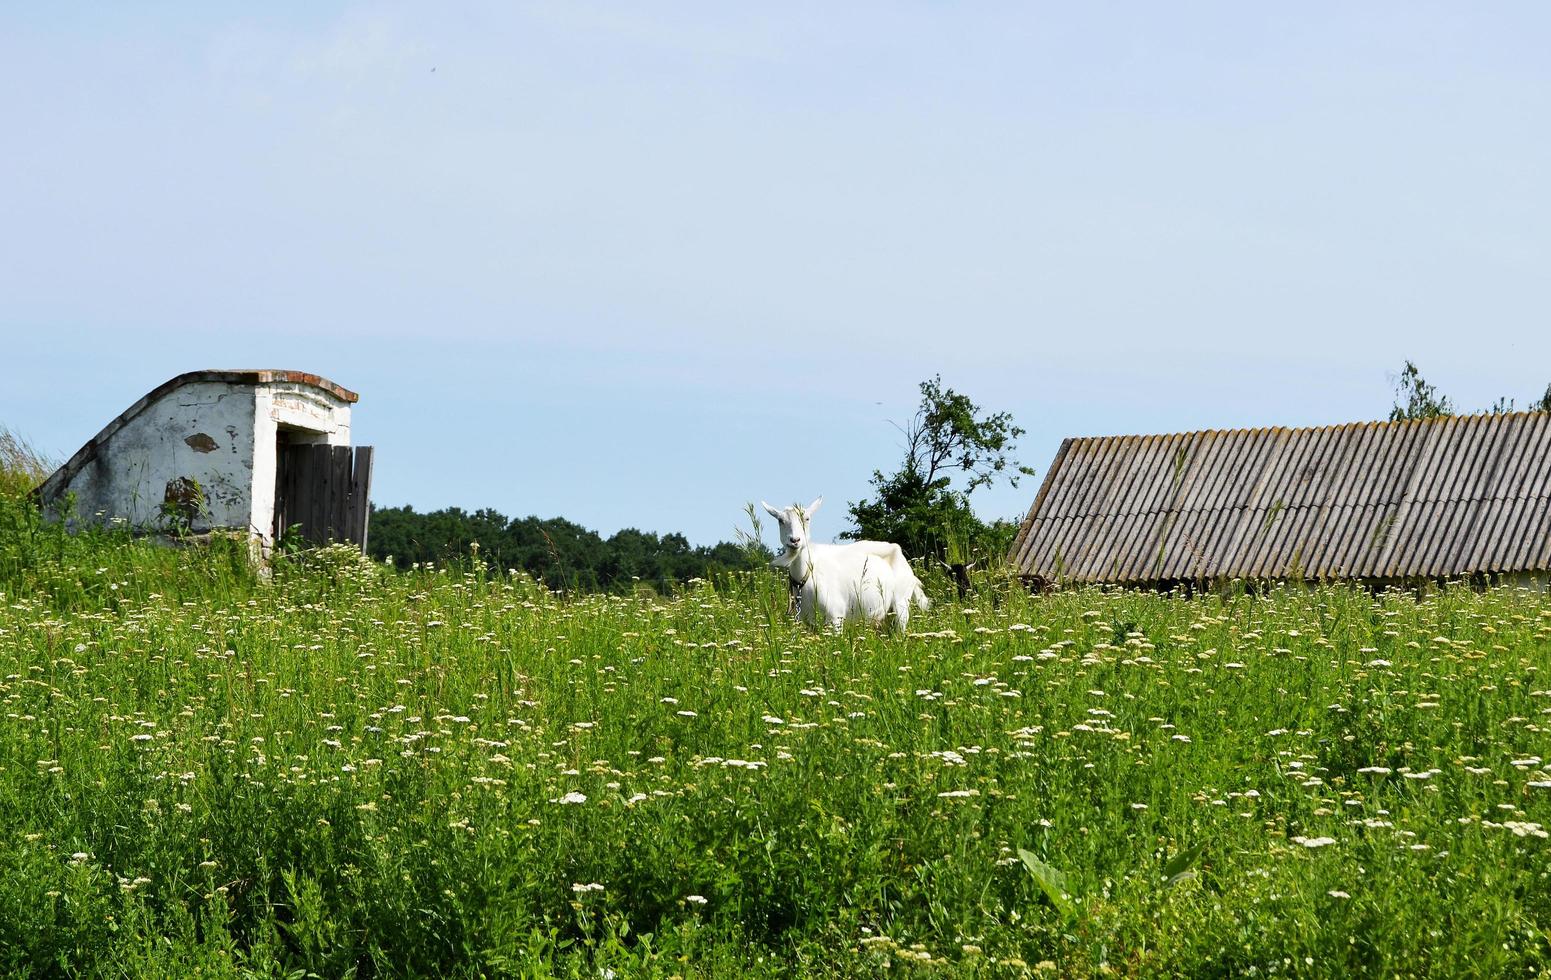 vit liten get med horn som tittar i grönt gräs foto